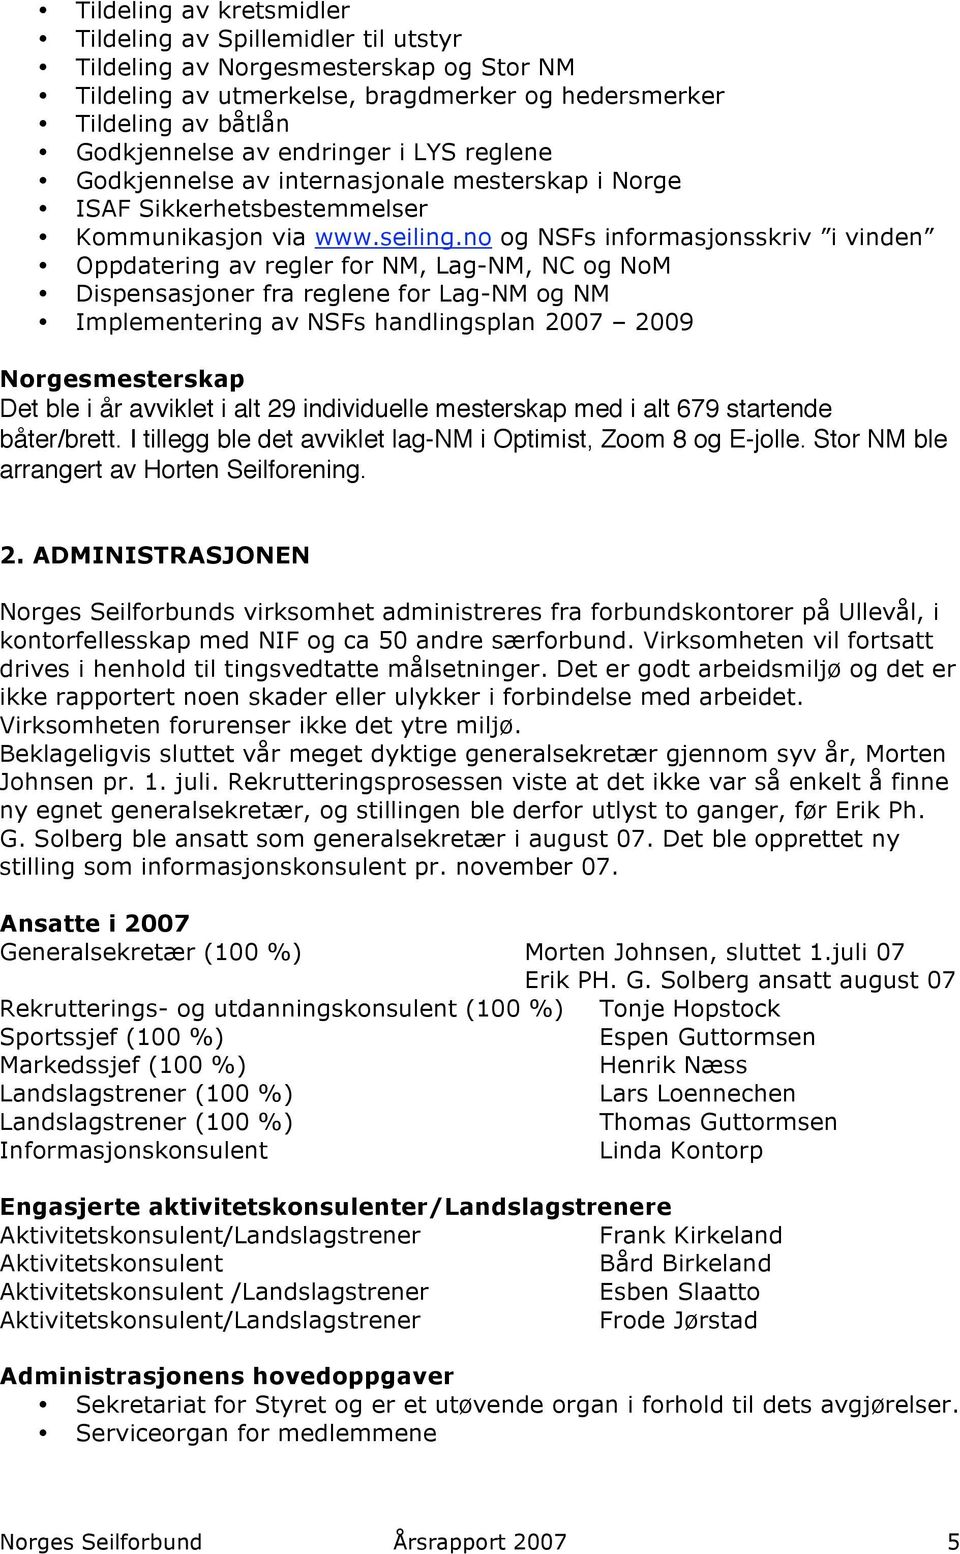 no og NSFs informasjonsskriv i vinden Oppdatering av regler for NM, Lag-NM, NC og NoM Dispensasjoner fra reglene for Lag-NM og NM Implementering av NSFs handlingsplan 2007 2009 Norgesmesterskap Det